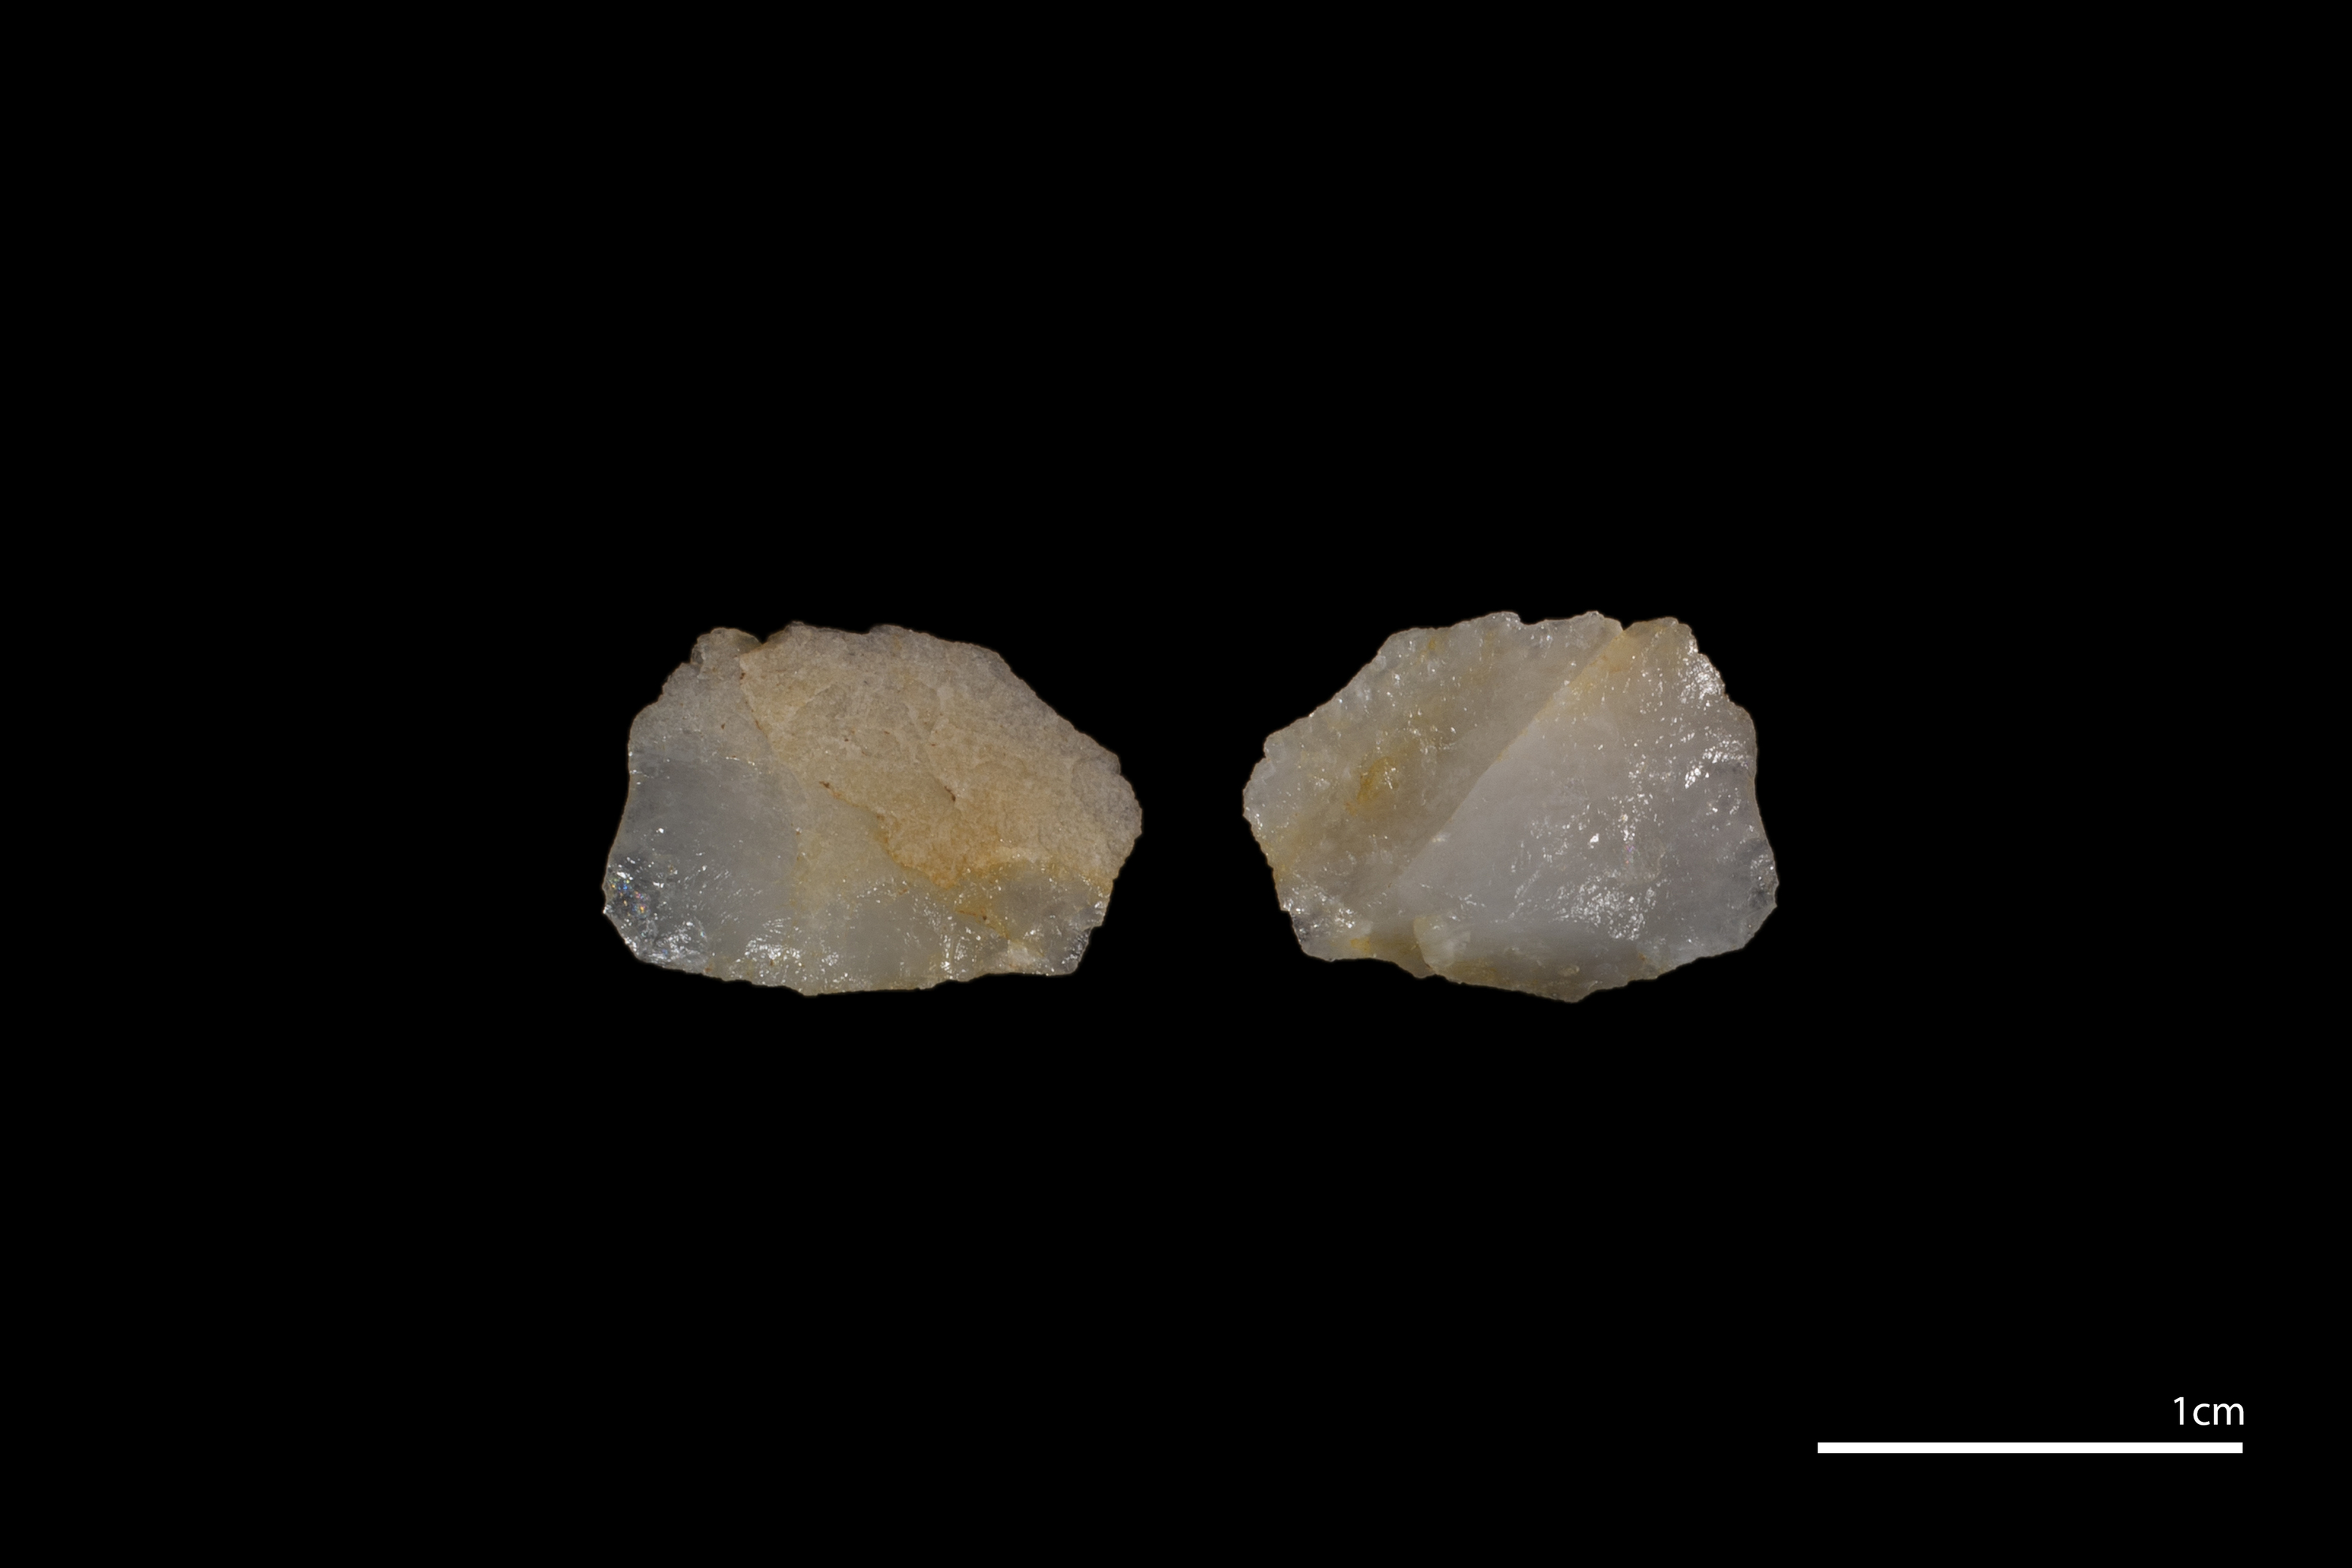 La lasca de cuarzo hallada en la Sierra de Atapuerca